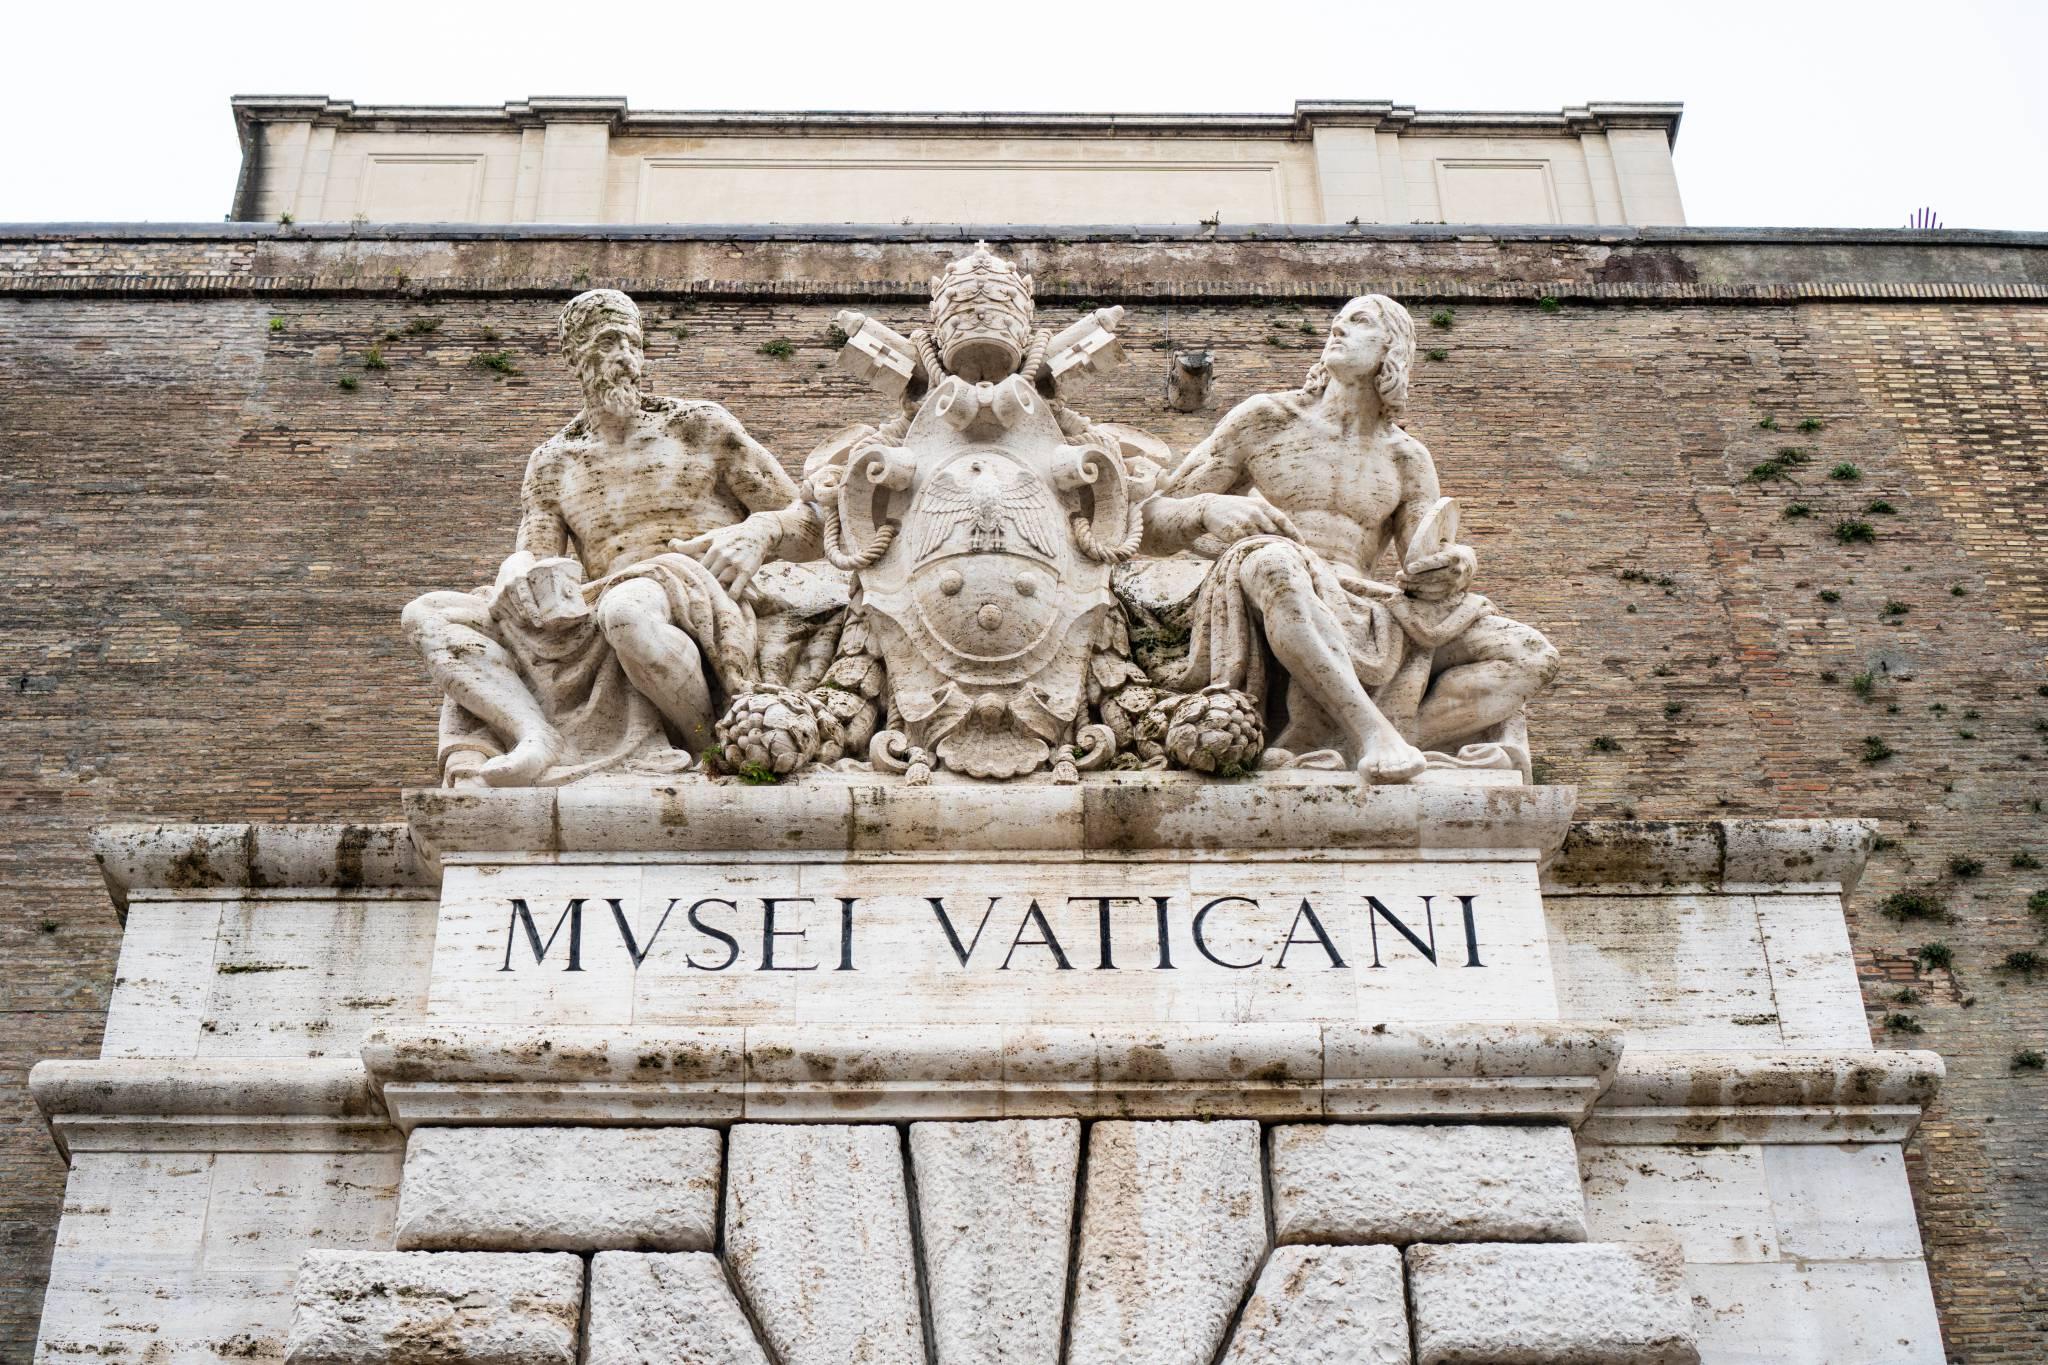  Wejście do Muzeów Watykańskich (fot. iStock)